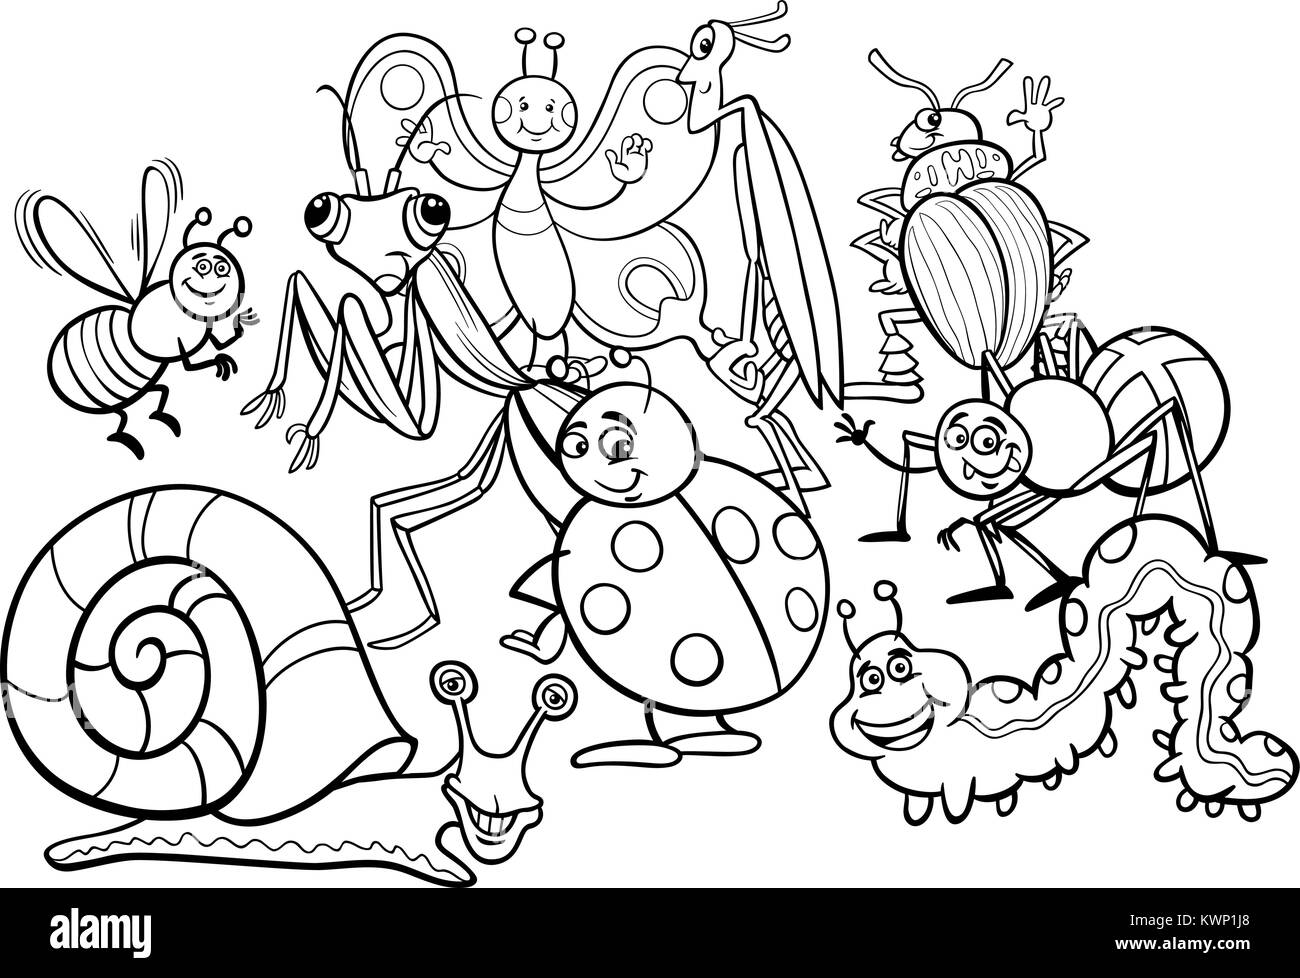 Schwarze und Weiße Cartoon Illustration von Insekten und Ungeziefer Tier Comicfiguren Gruppe Malbuch Stock Vektor